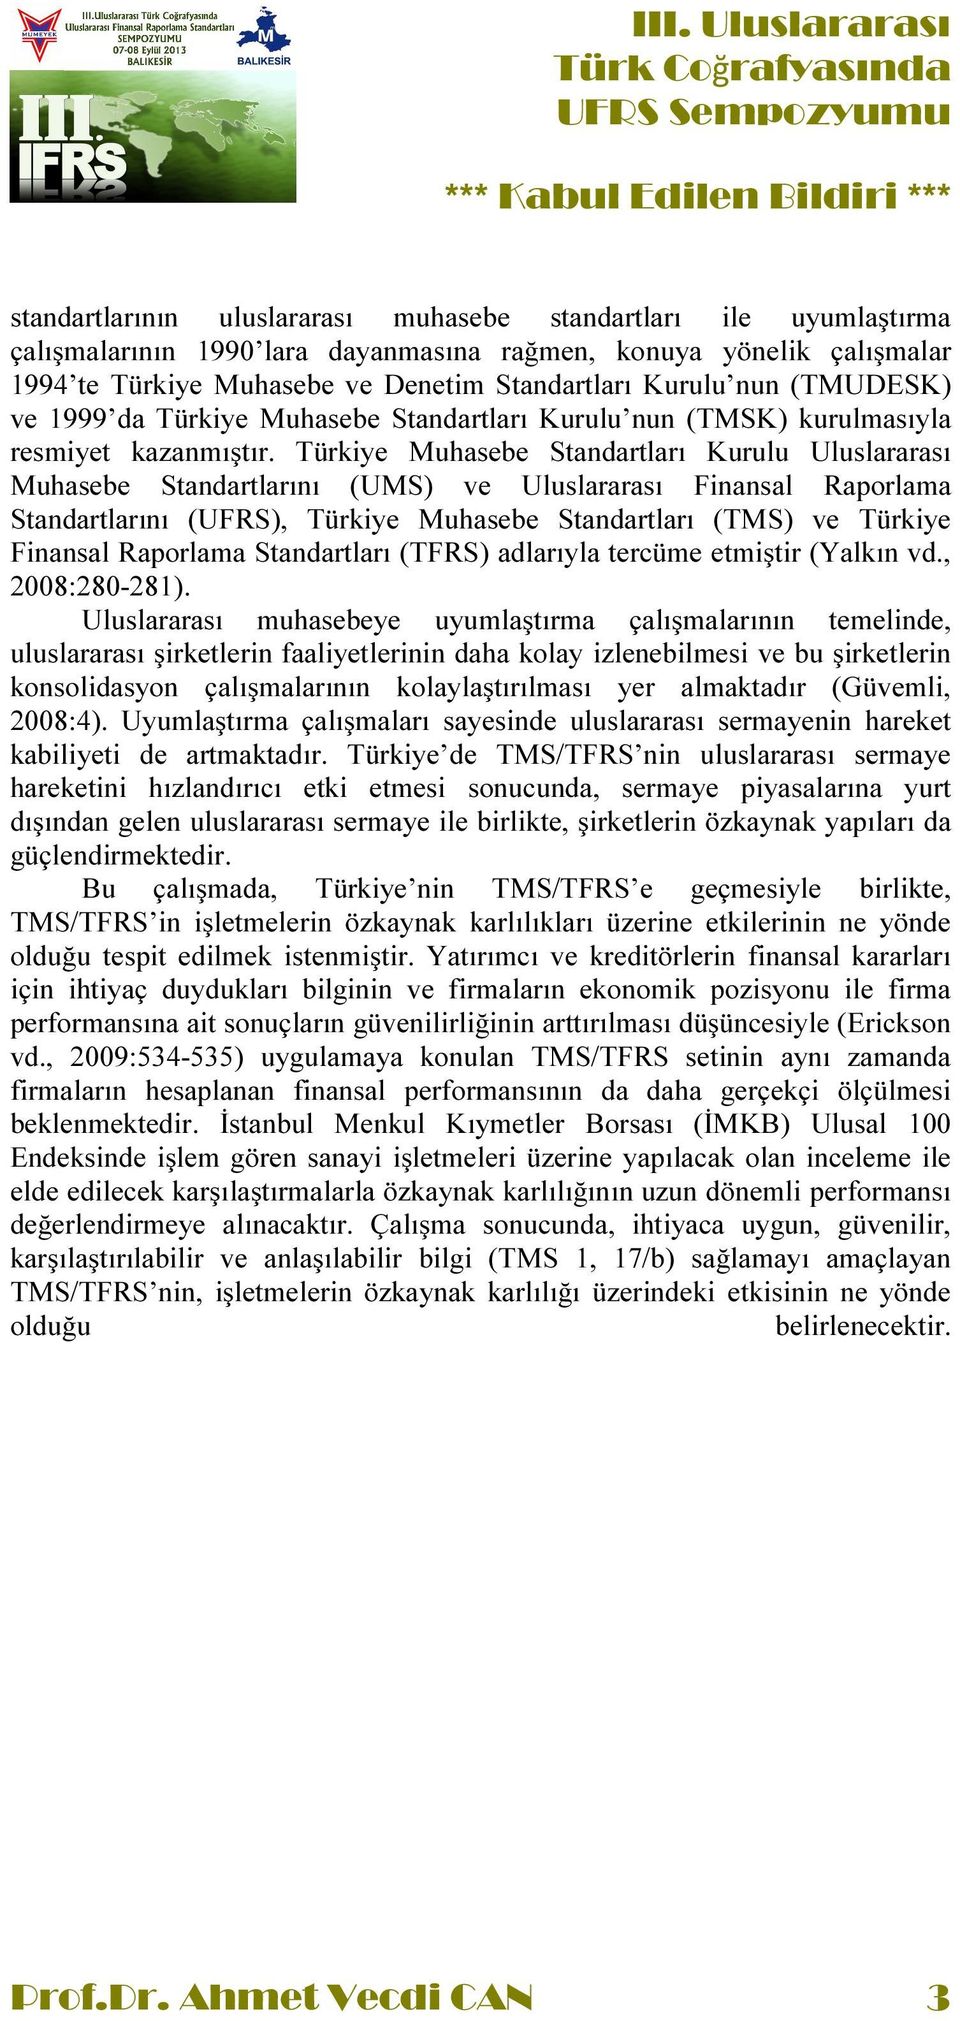 Türkiye Muhasebe Standartları Kurulu Uluslararası Muhasebe Standartlarını (UMS) ve Uluslararası Finansal Raporlama Standartlarını (UFRS), Türkiye Muhasebe Standartları (TMS) ve Türkiye Finansal